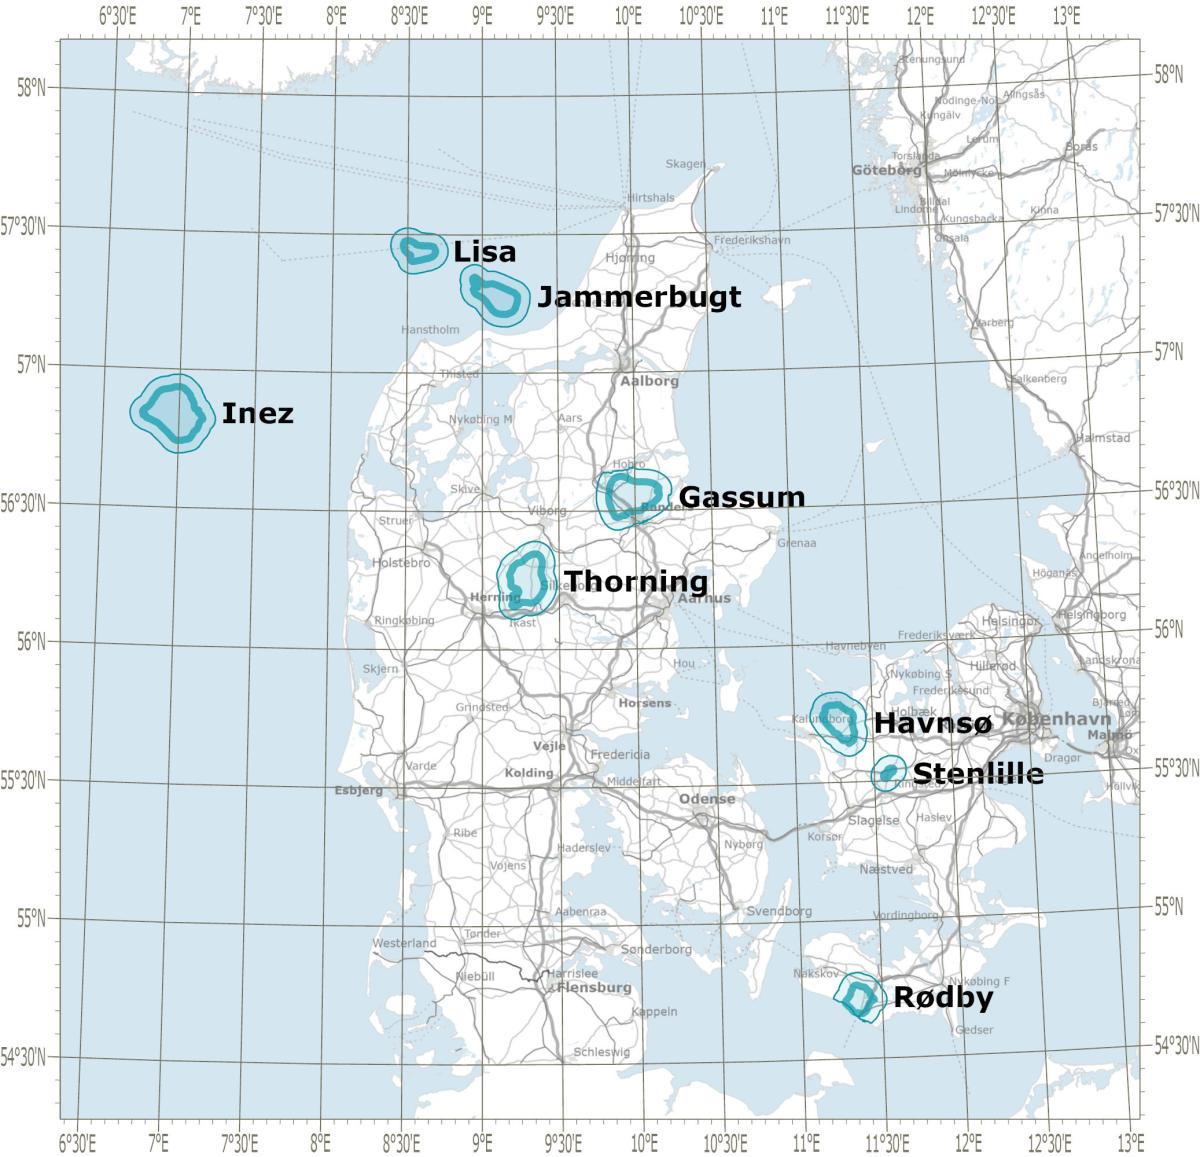 Kort der viser de 8 områder der er omfattet af udbuddet Stenlille, Havnsø, Rødby, Gassum, Thorning, Jammerbugt, Lisa og Inez